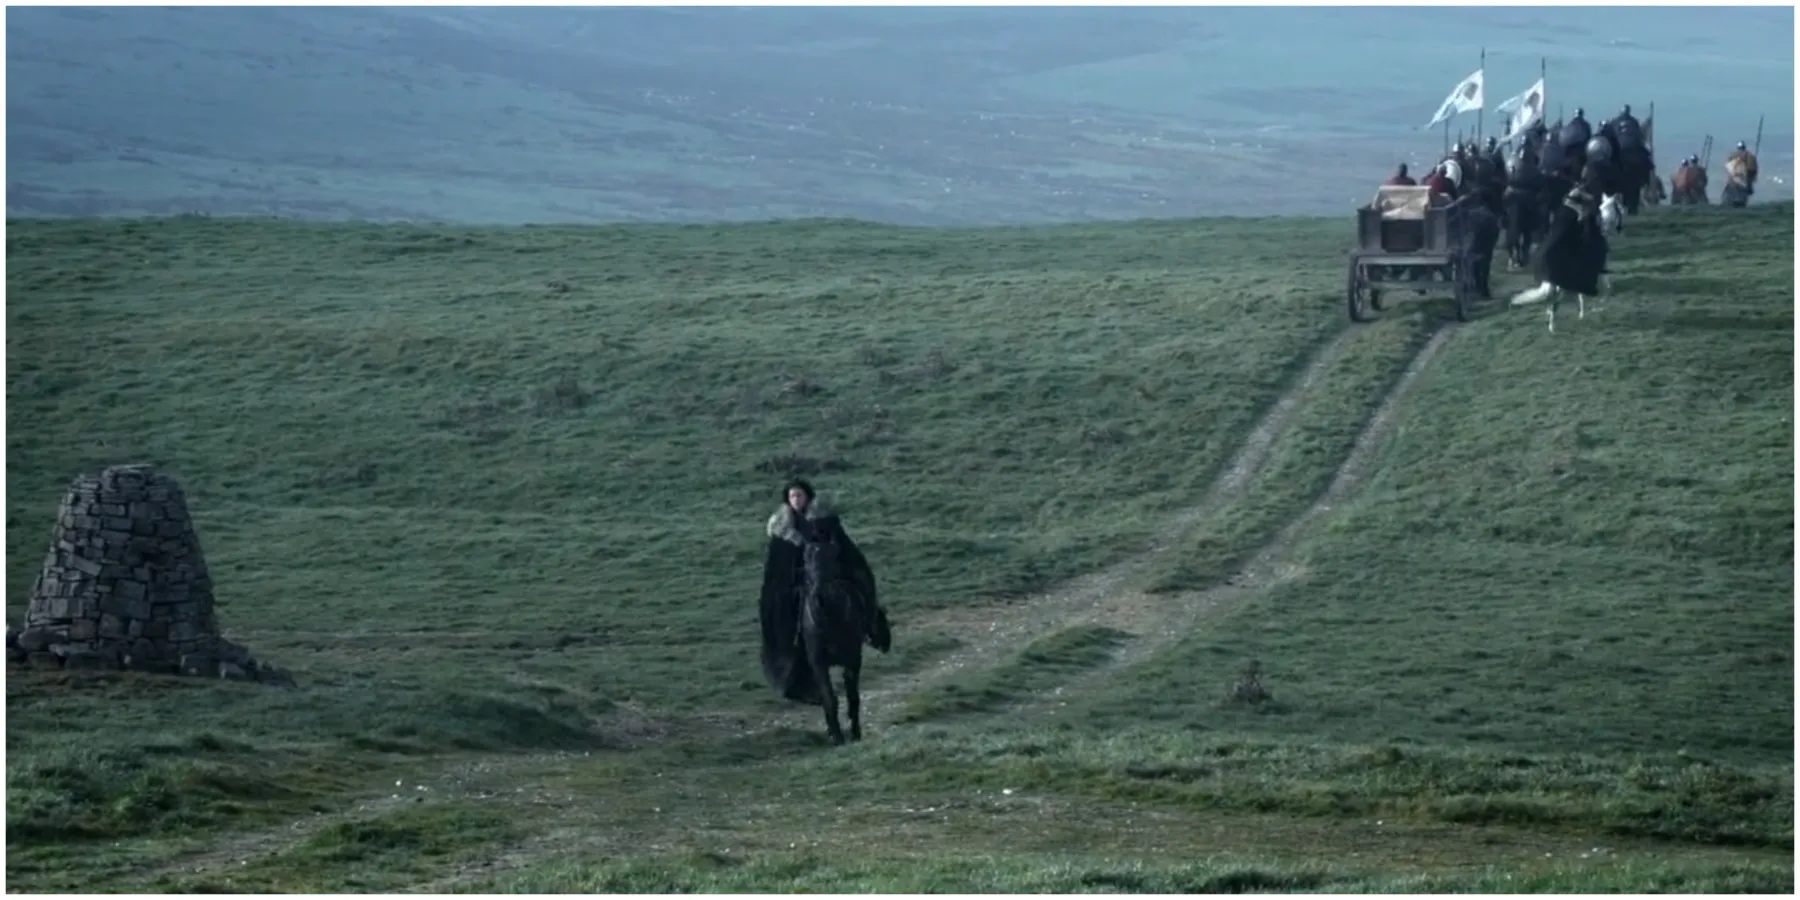 Jon Snow leaves for Castle Black in Game of Thrones season 1.